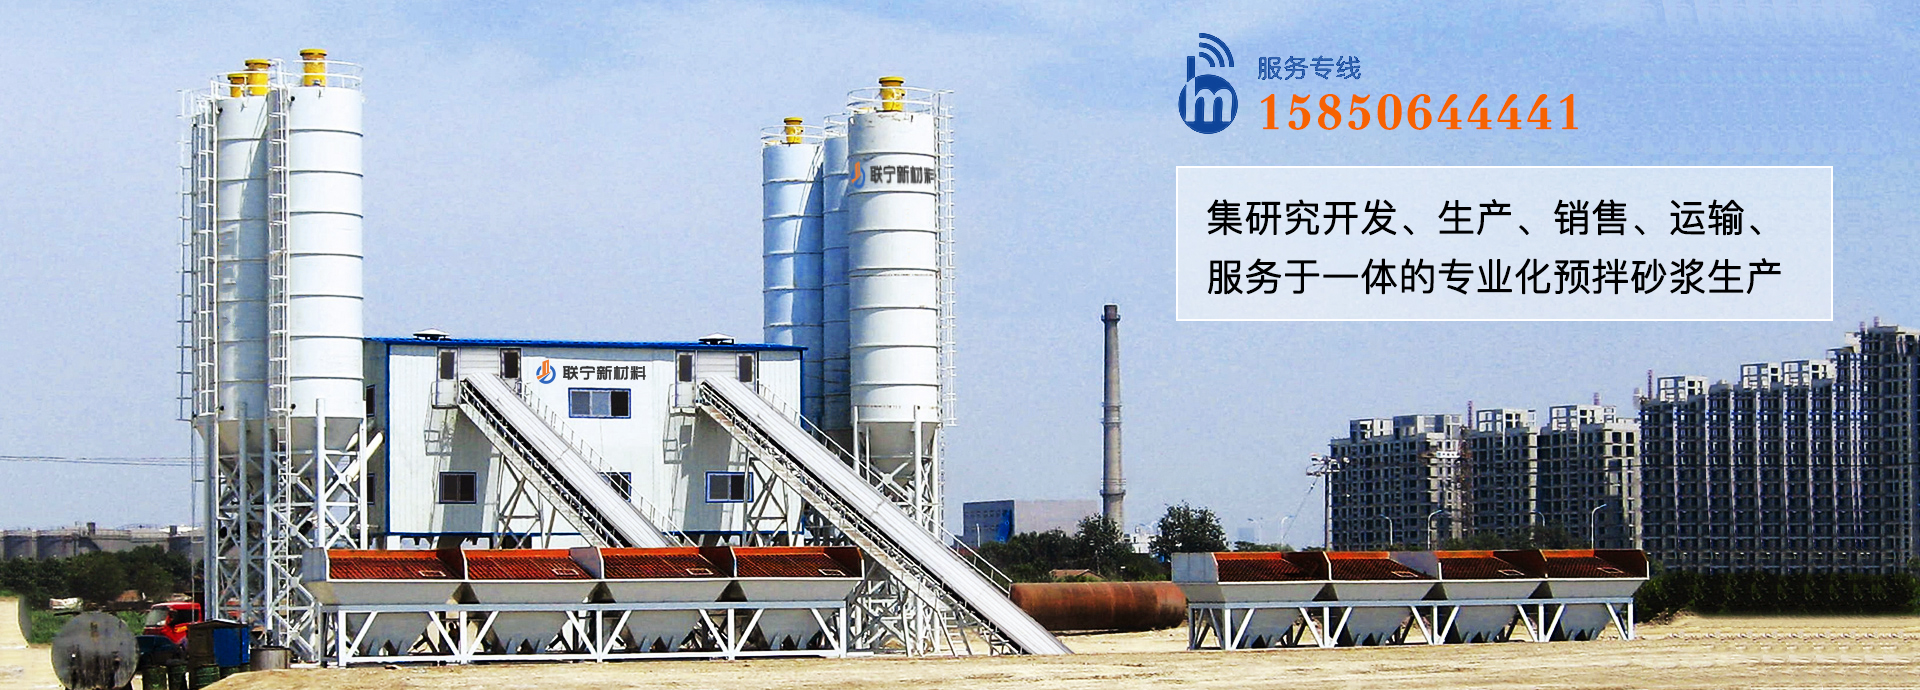 江苏联宁集研究开发、生产、销售、运输、服务于一体的专业化预拌砂浆生产企业